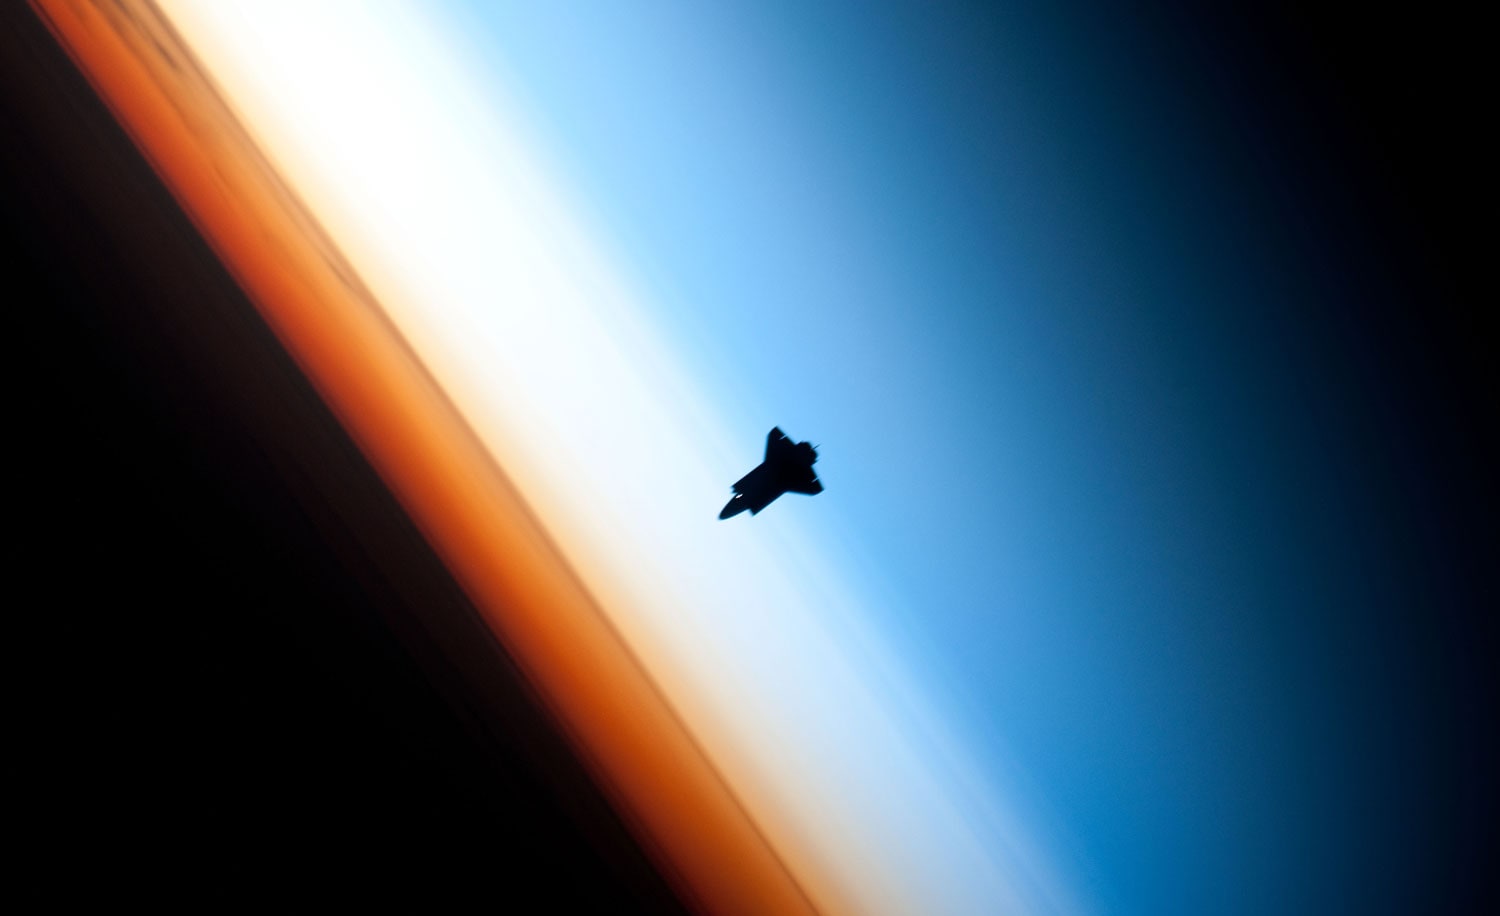 shuttle_atmosphere.jpg